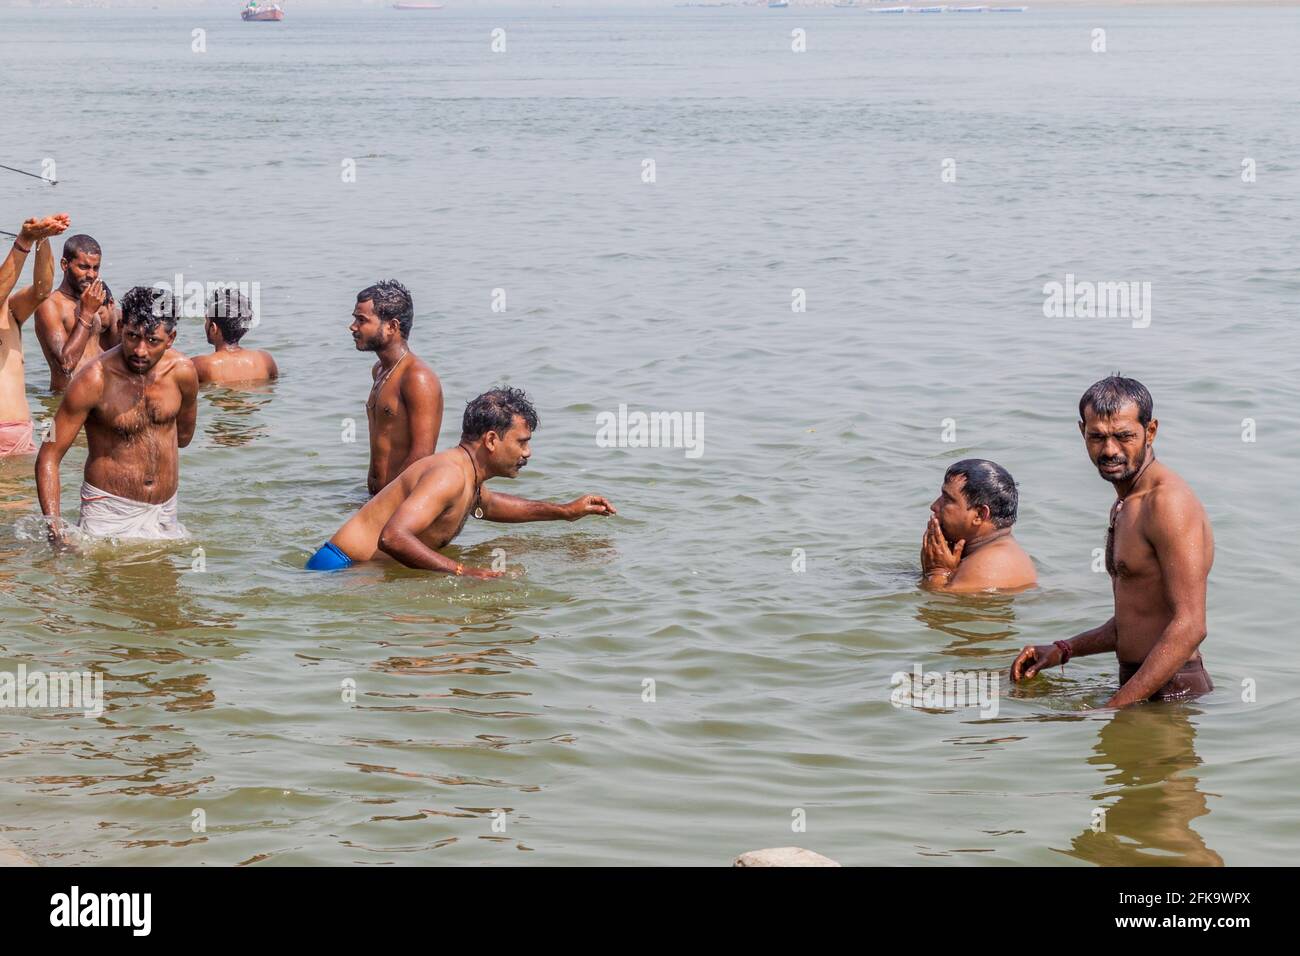 VARANASI, INDE - 25 OCTOBRE 2016 : les habitants de la région se lavent dans l'eau sacrée de Ganges rover à un Ghat Riverfront Steps à Varanasi, Inde Banque D'Images